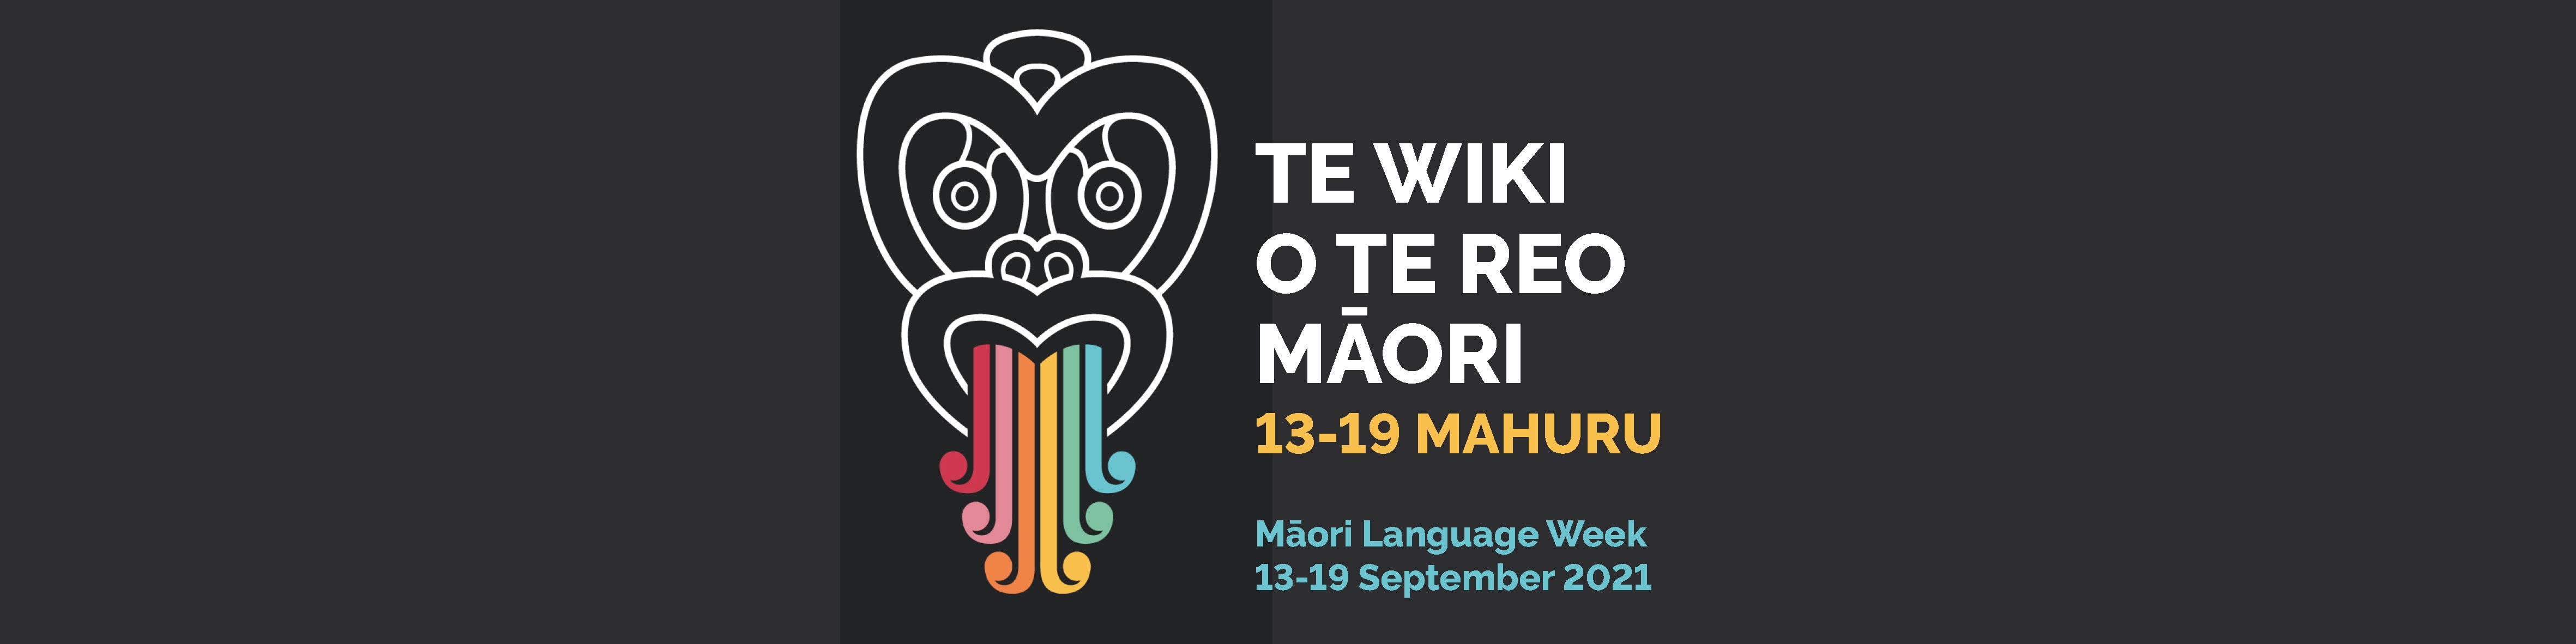 te wiki o te reo maori 2021